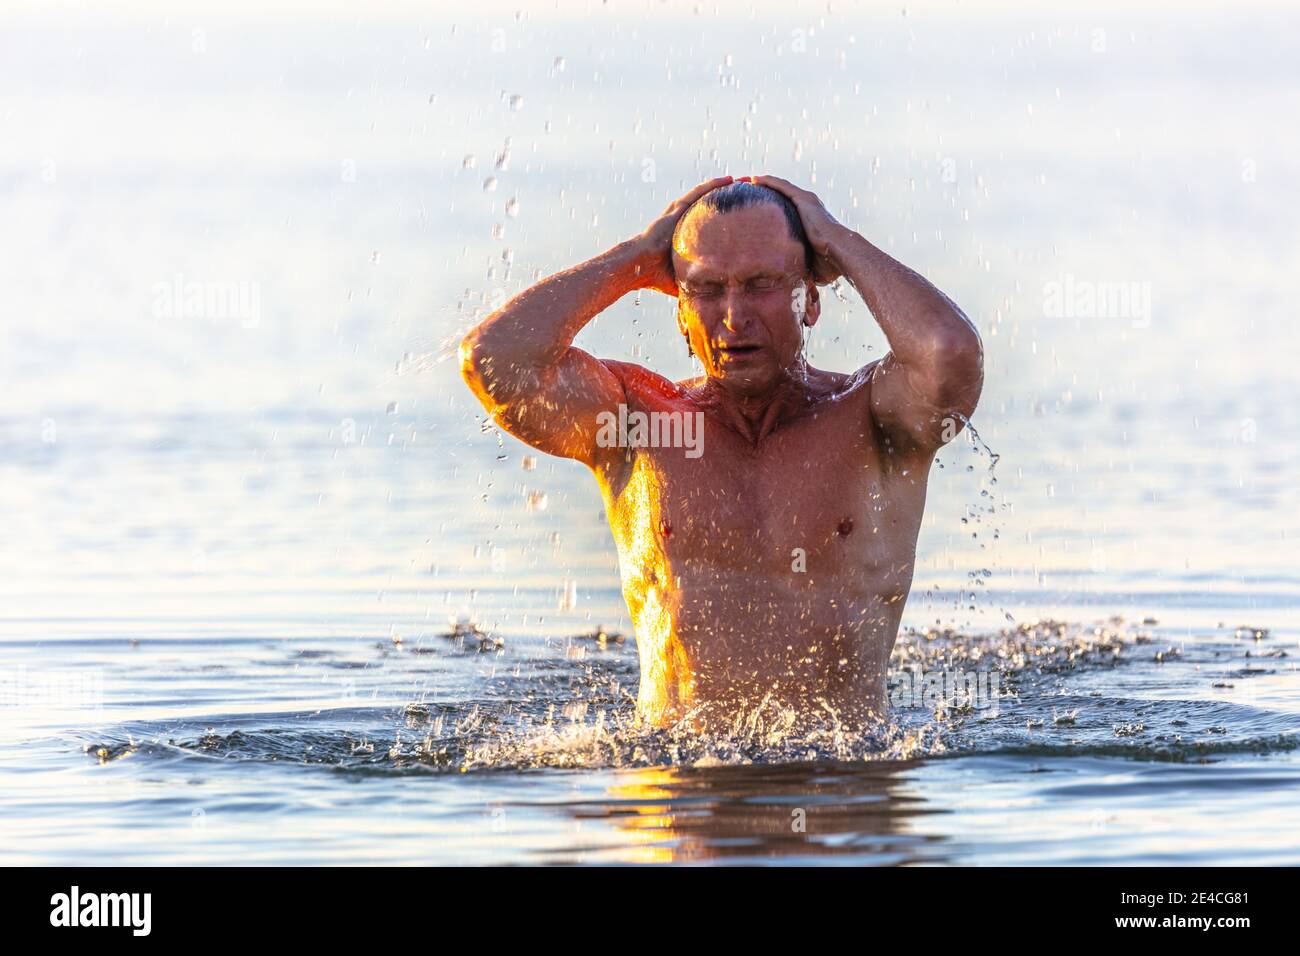 Homme 50 plus en forme, dans la mer, au bord de la mer. L'homme se rafraîchit dans la mer Baltique, dans la baie de Lücker, sur la plage de l'Ostseebad Scharbeutz. Banque D'Images